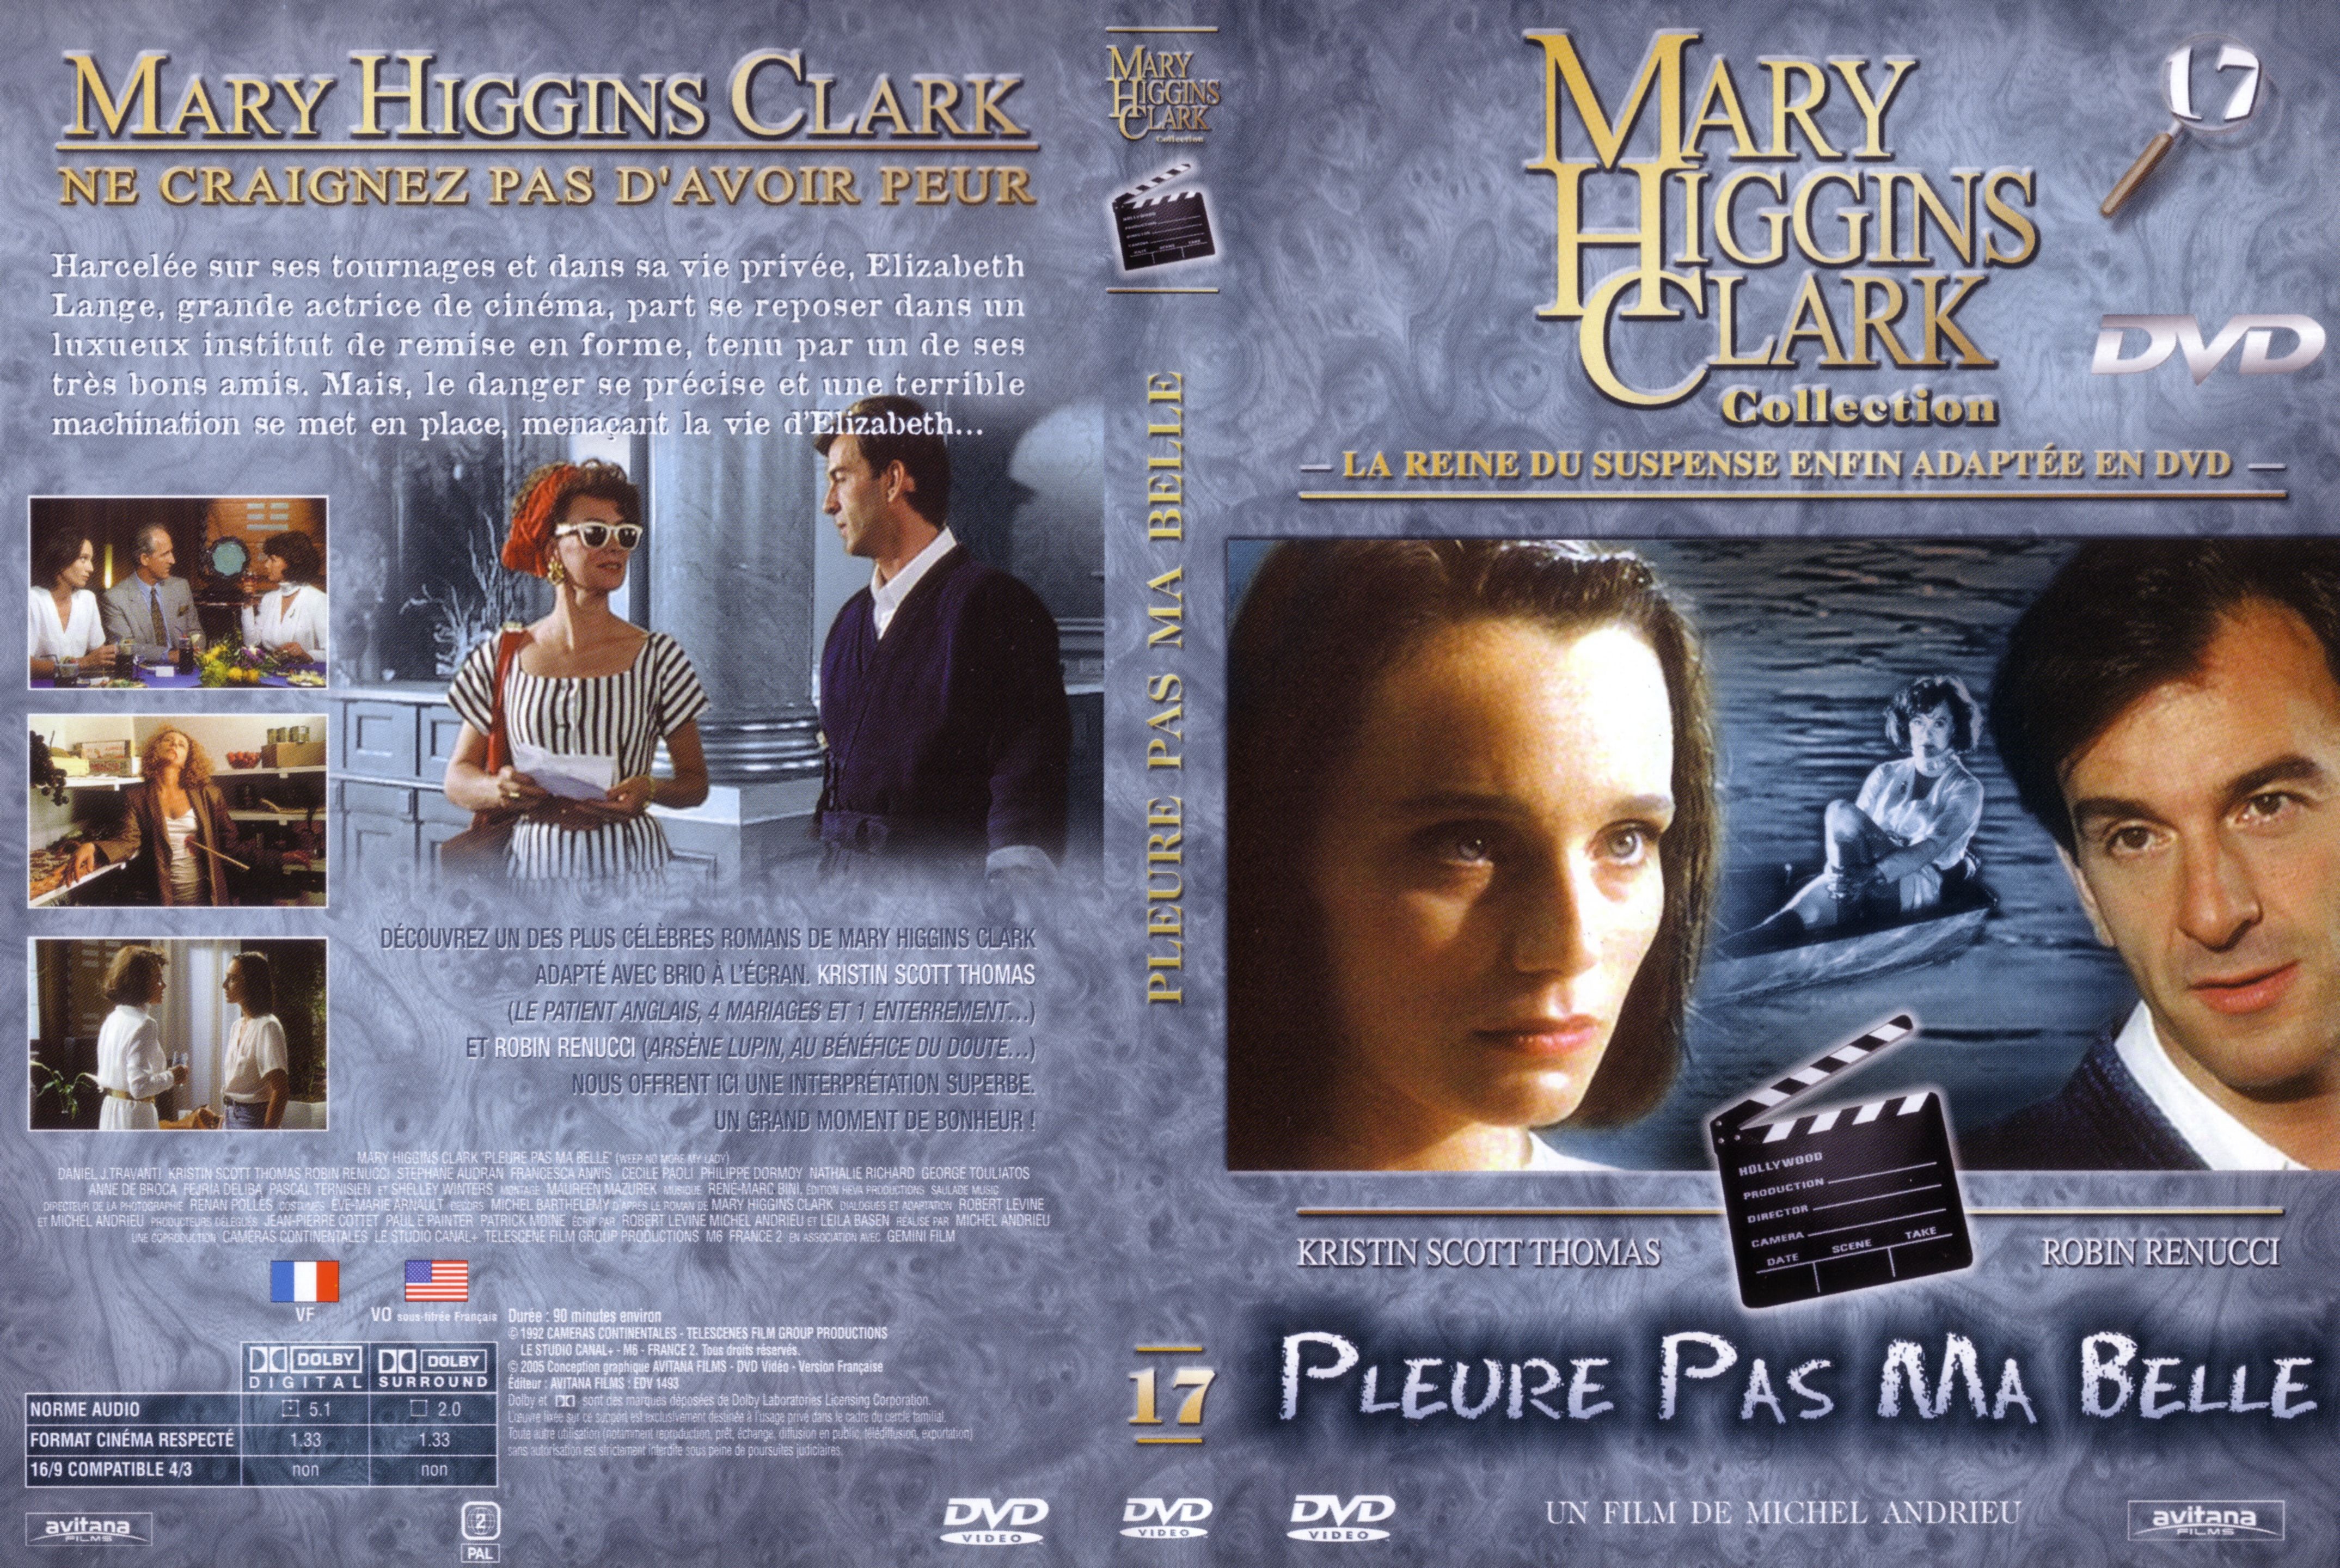 Jaquette DVD de Mary Higgins Clark vol 17 - Pleure pas ma belle - Cinéma Passion